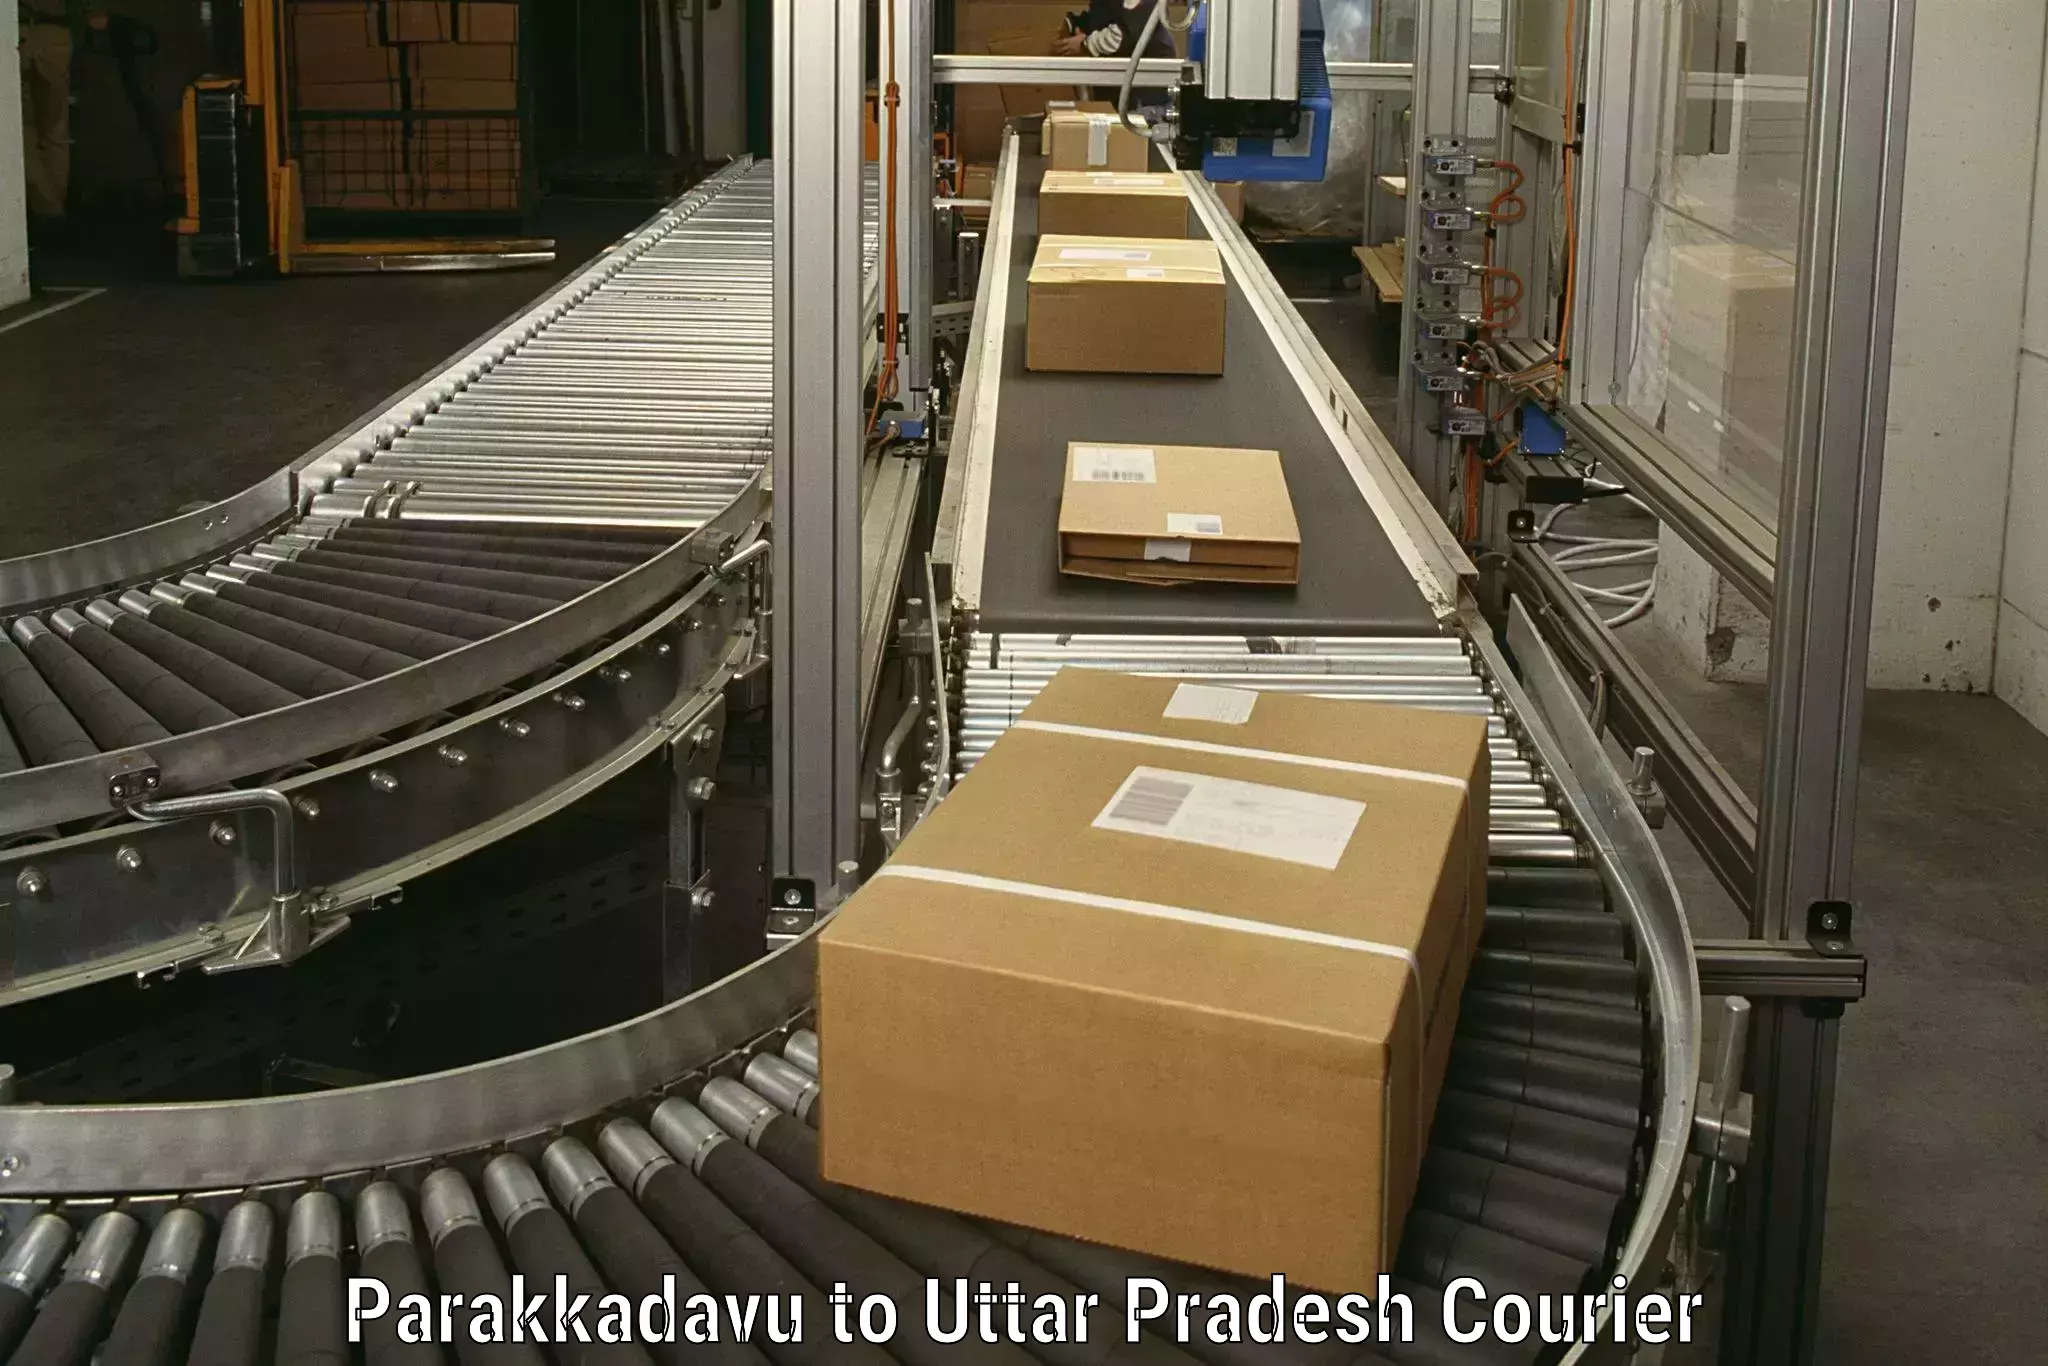 High-quality moving services Parakkadavu to Agra